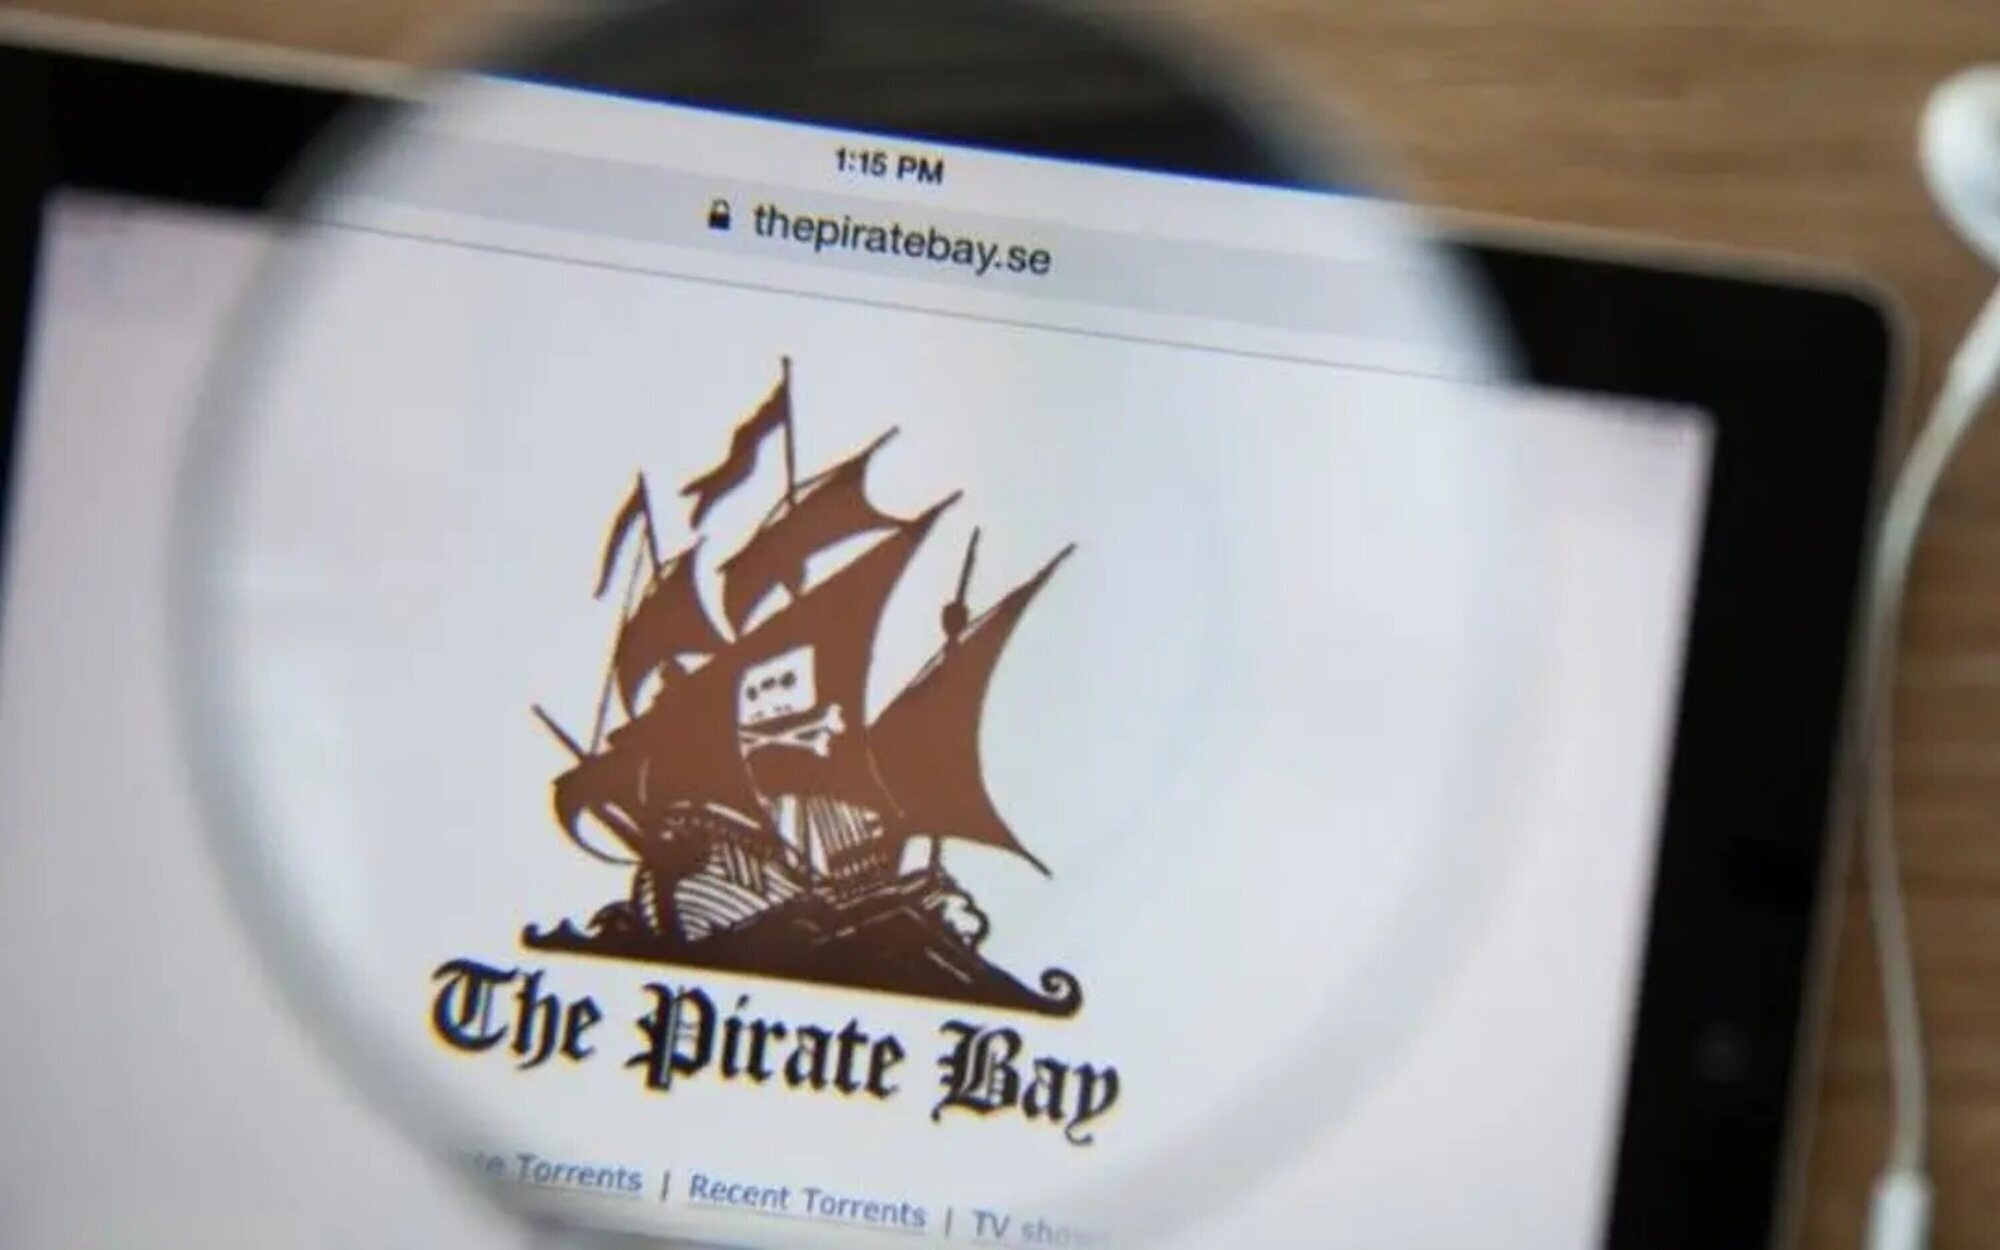 La historia de The Pirate Bay se convertirá en serie de televisión